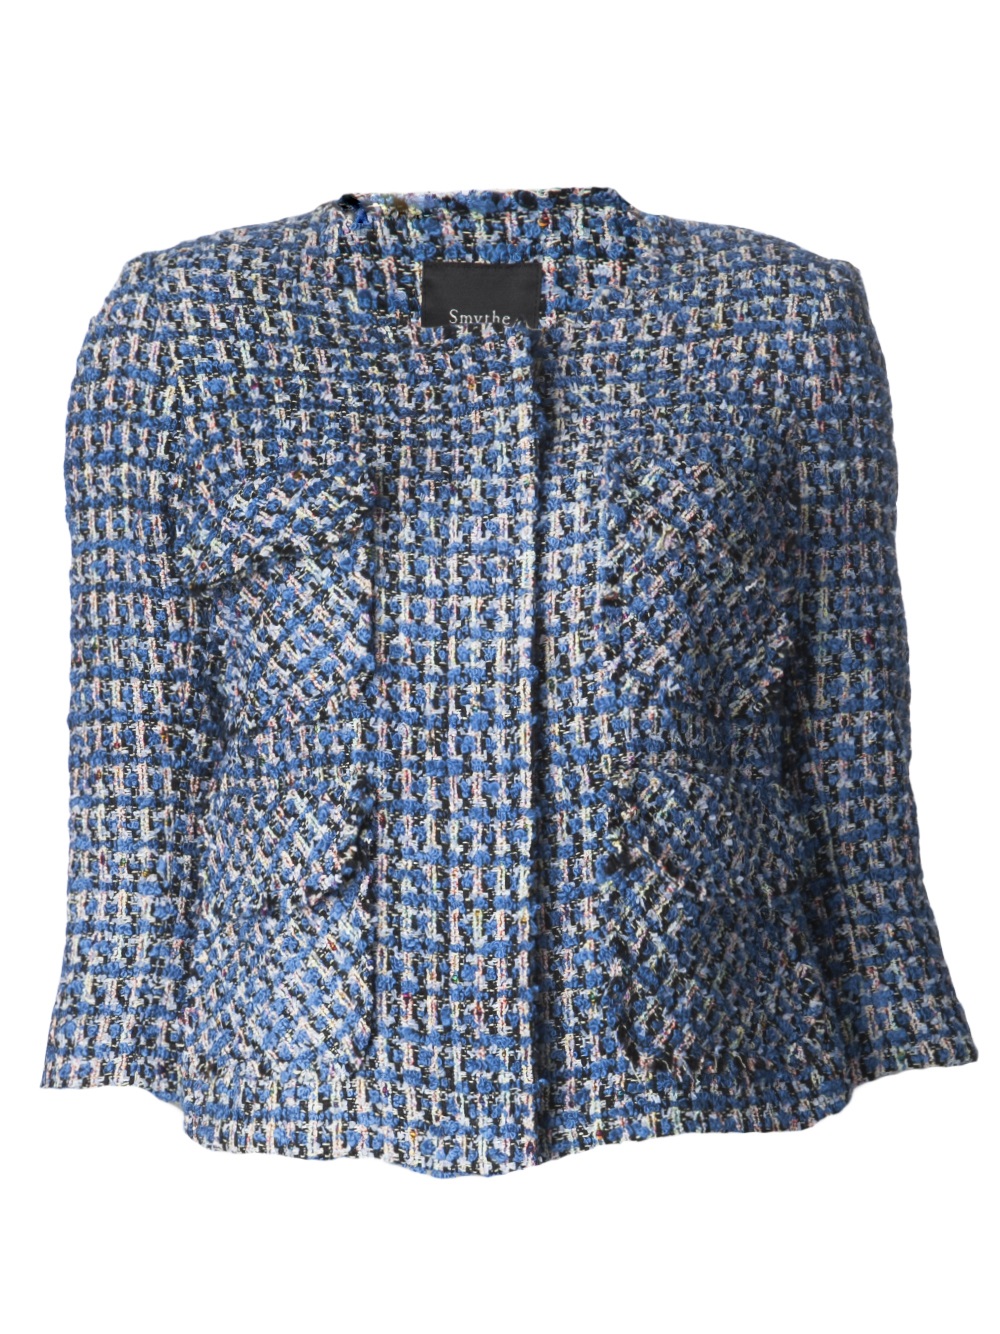 Lyst - Smythe Bouclé Jacket in Blue